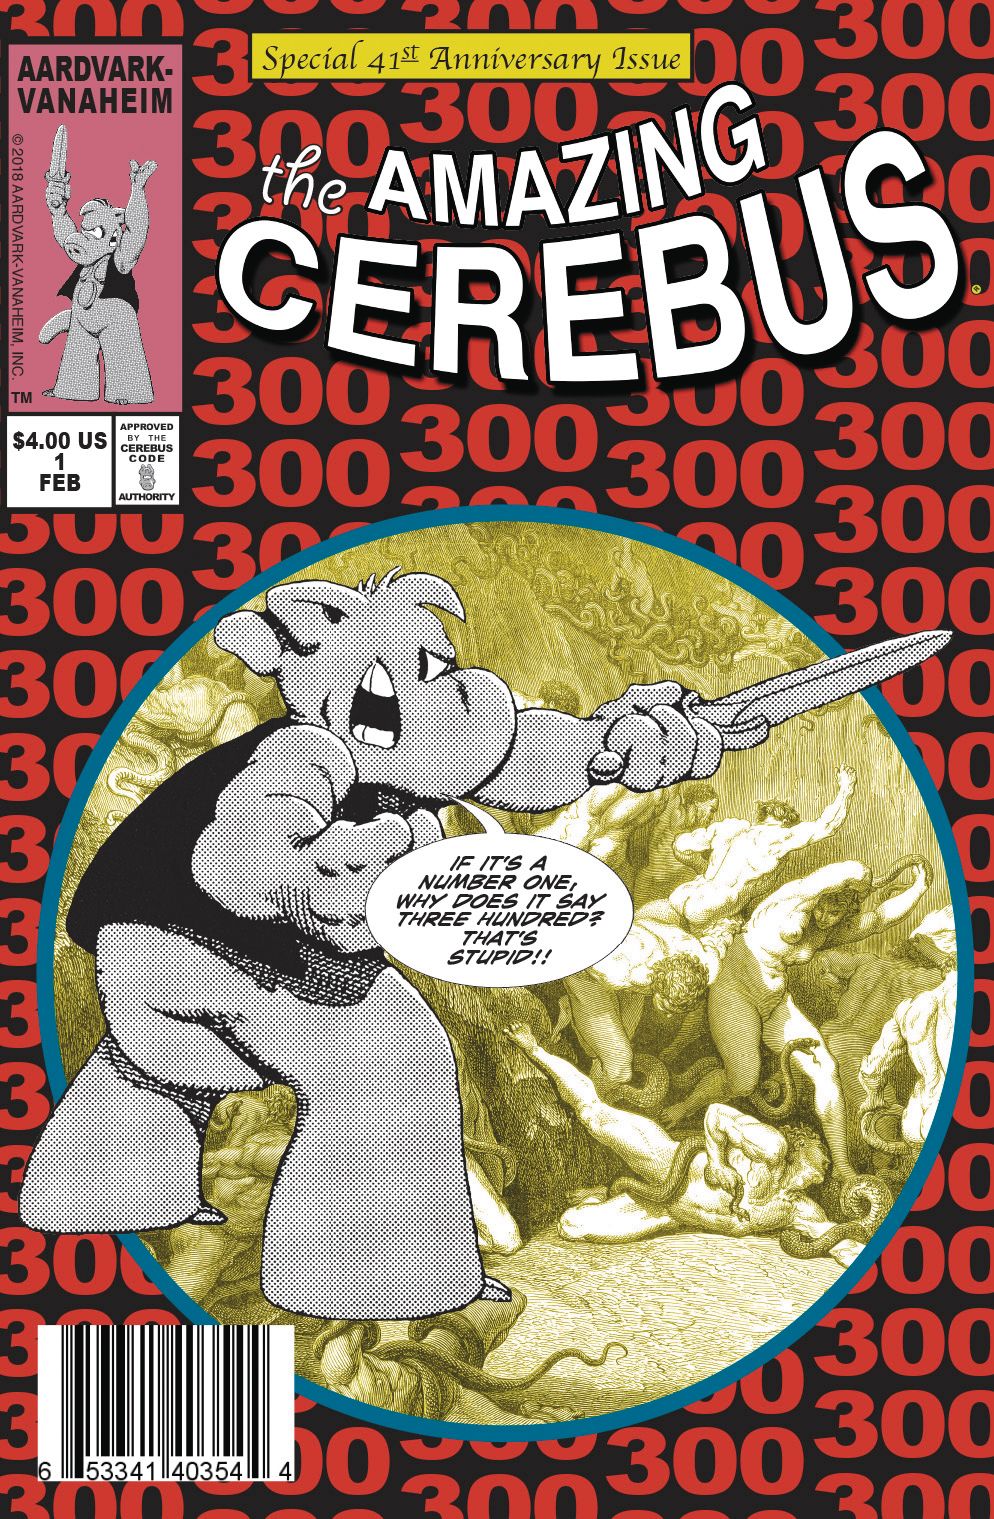 The Amazing Cerebus Comic